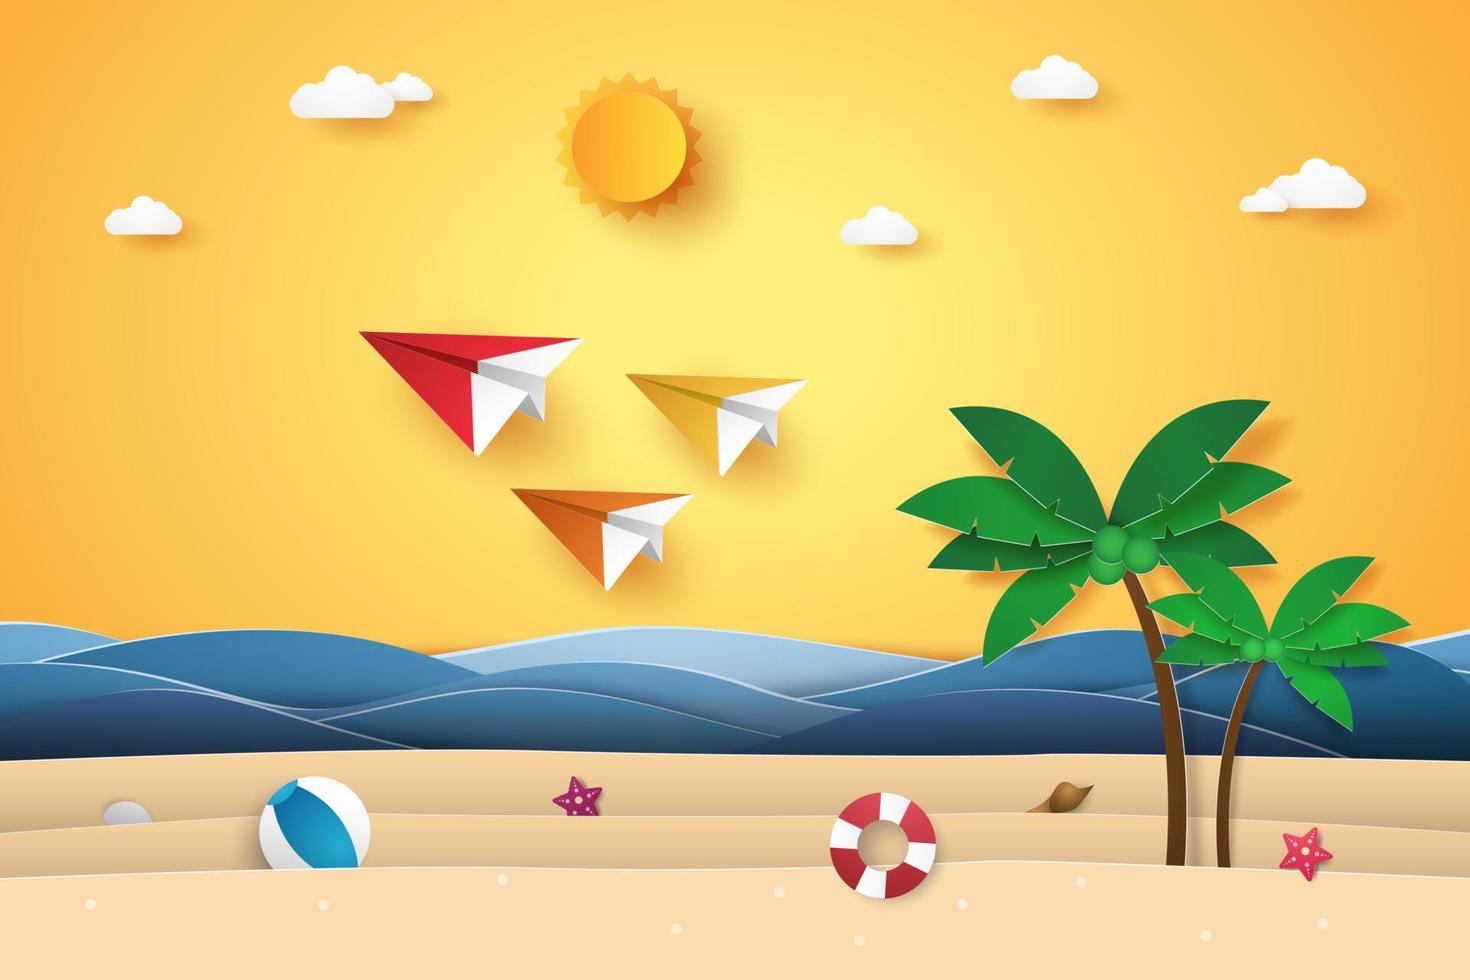 ora legale, coloratissimi aerei origami che volano nel cielo con spiaggia e albero di cocco, stile di arte della carta vettore